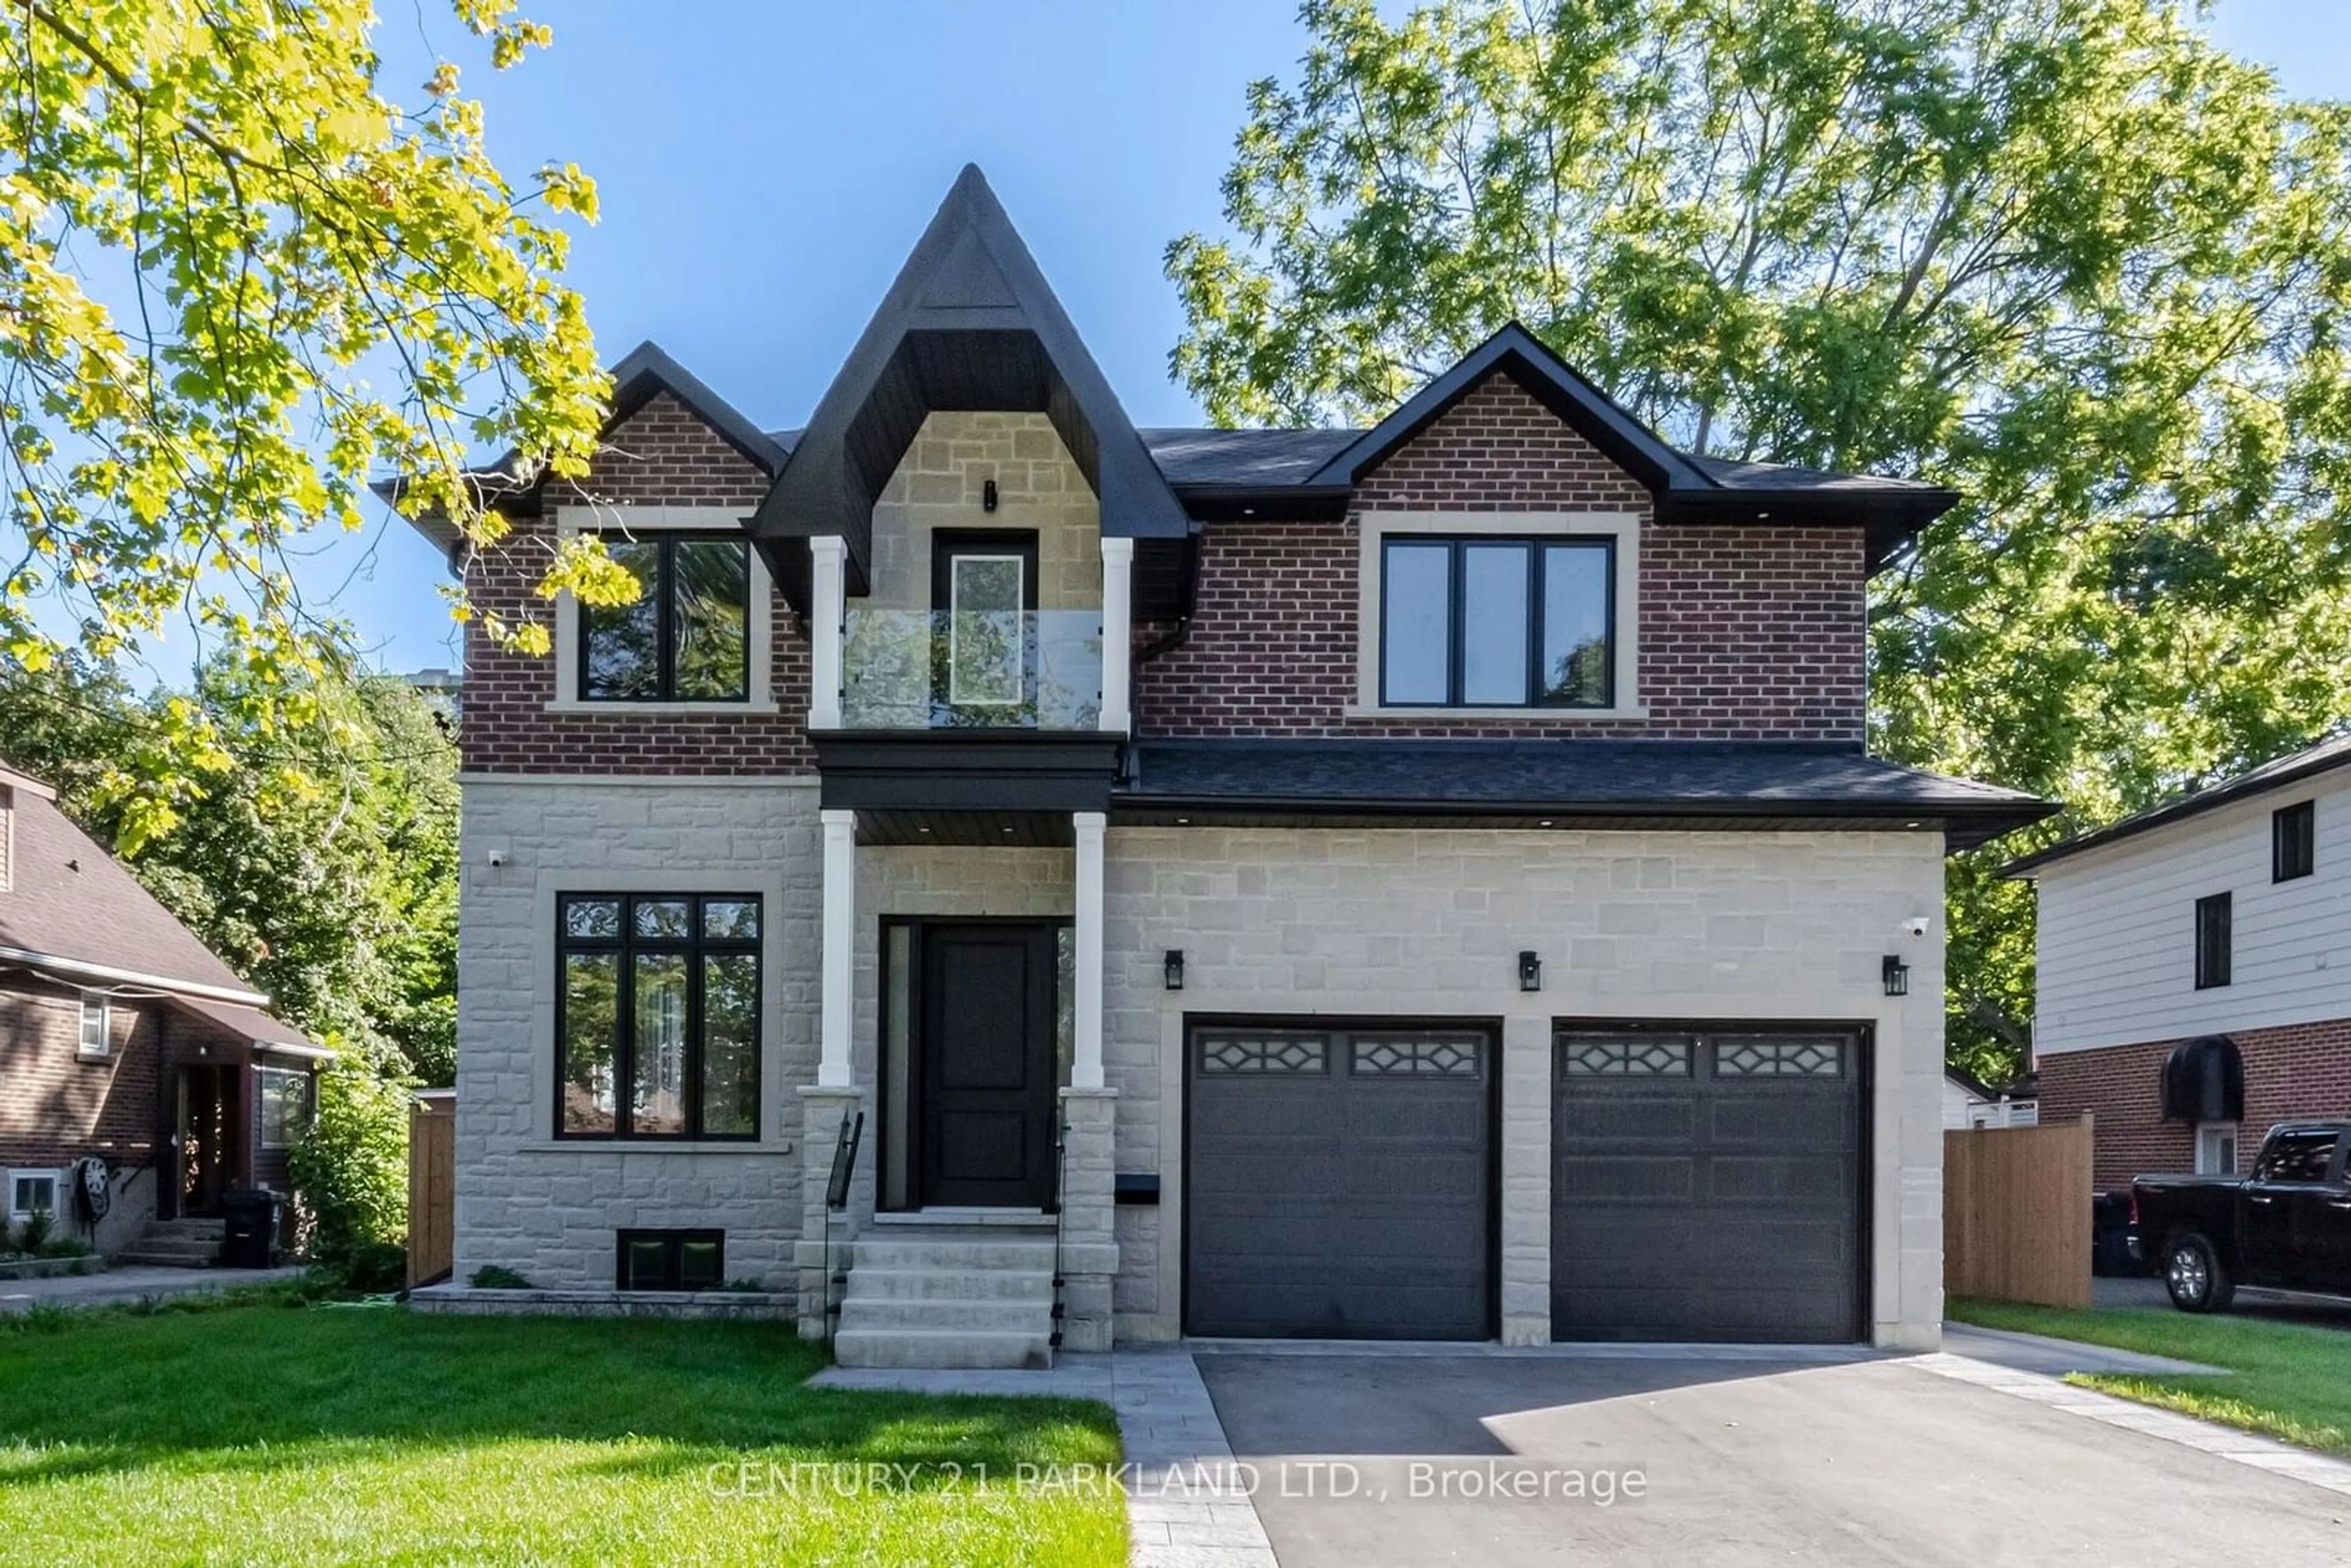 Home with brick exterior material for 21 Falaise Rd, Toronto Ontario M1E 3B6